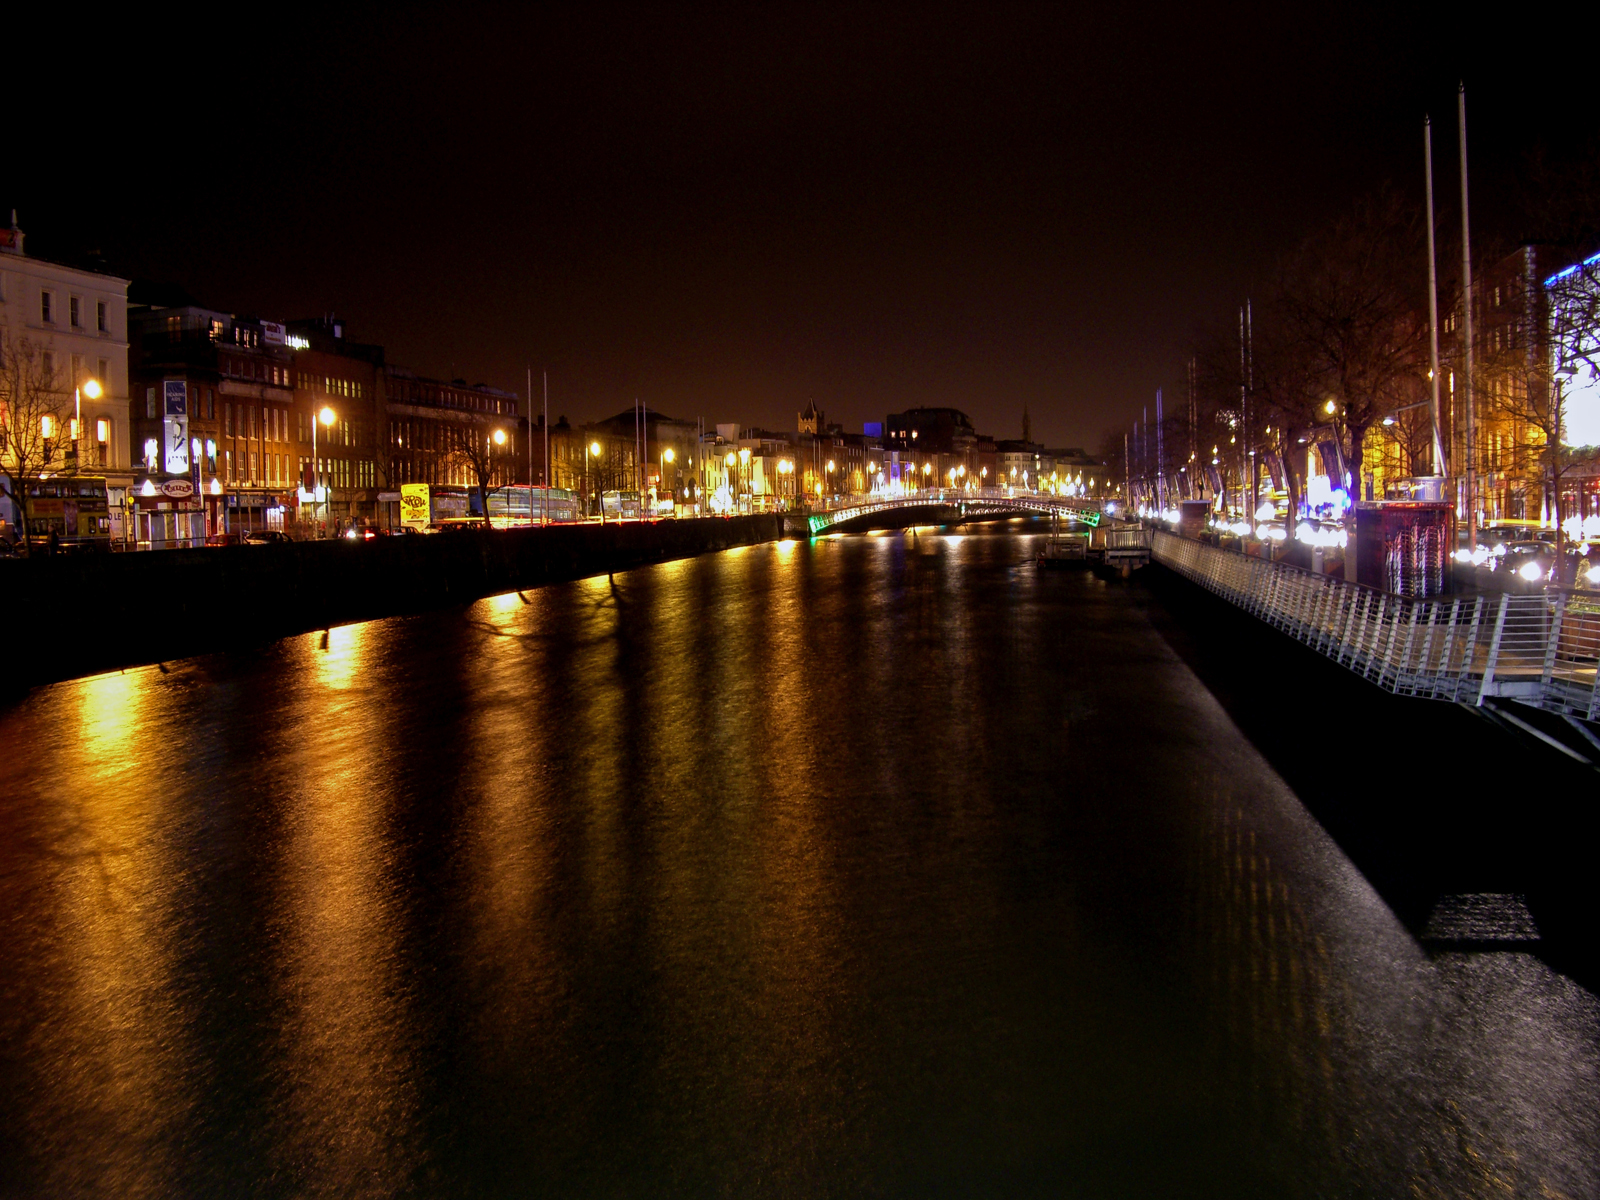 Dublin by Night by Shogun1701